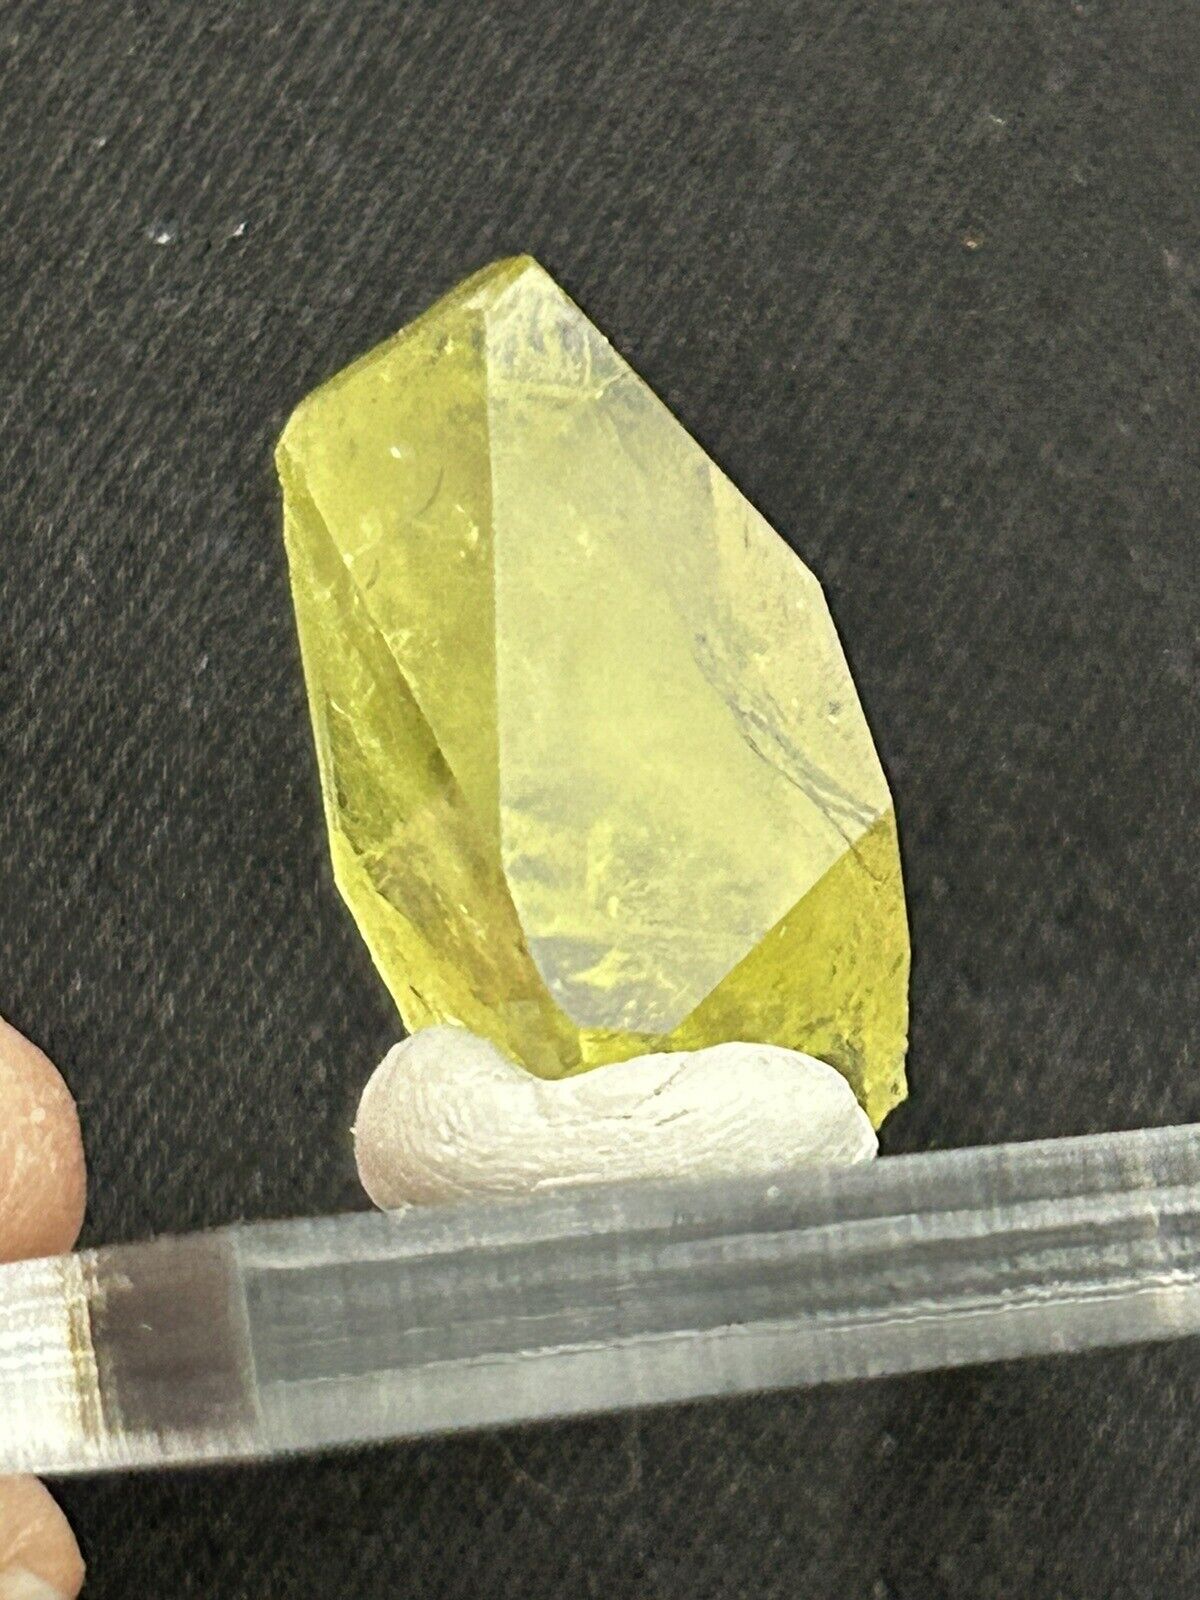 Superb Gemmy Brazilianite Crystal, Minas Gerais, Brazil  ex. Bill & Anne Cook